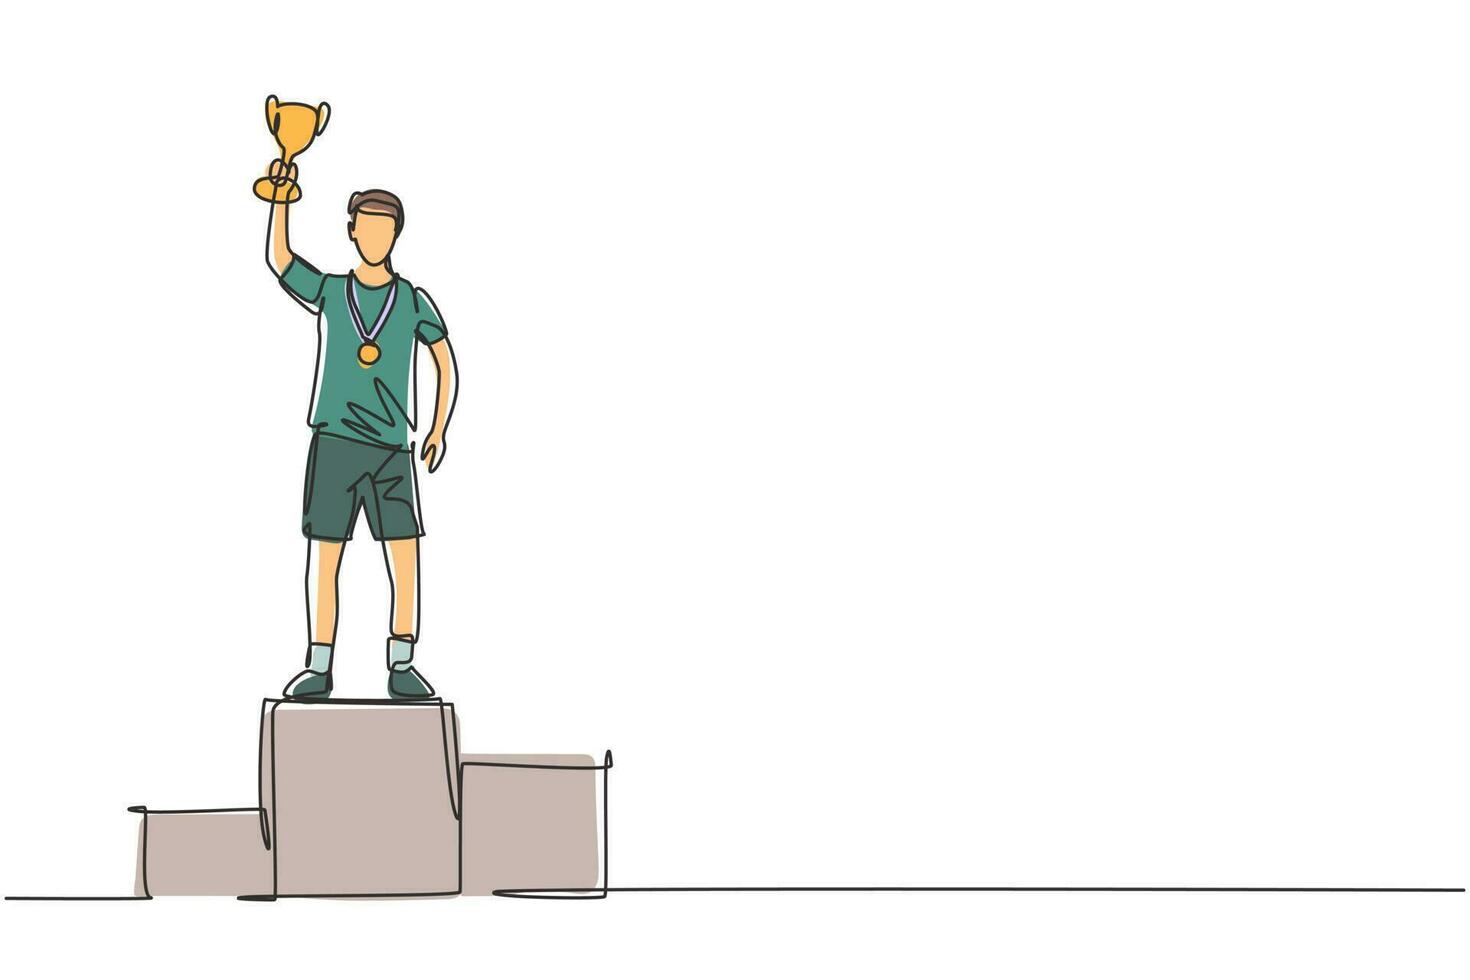 Atleta masculino de dibujo de línea continua única vistiendo camiseta deportiva levantando trofeo dorado con una mano en el podio. celebrando la victoria de la competencia. Ilustración de vector de diseño gráfico de dibujo de una línea